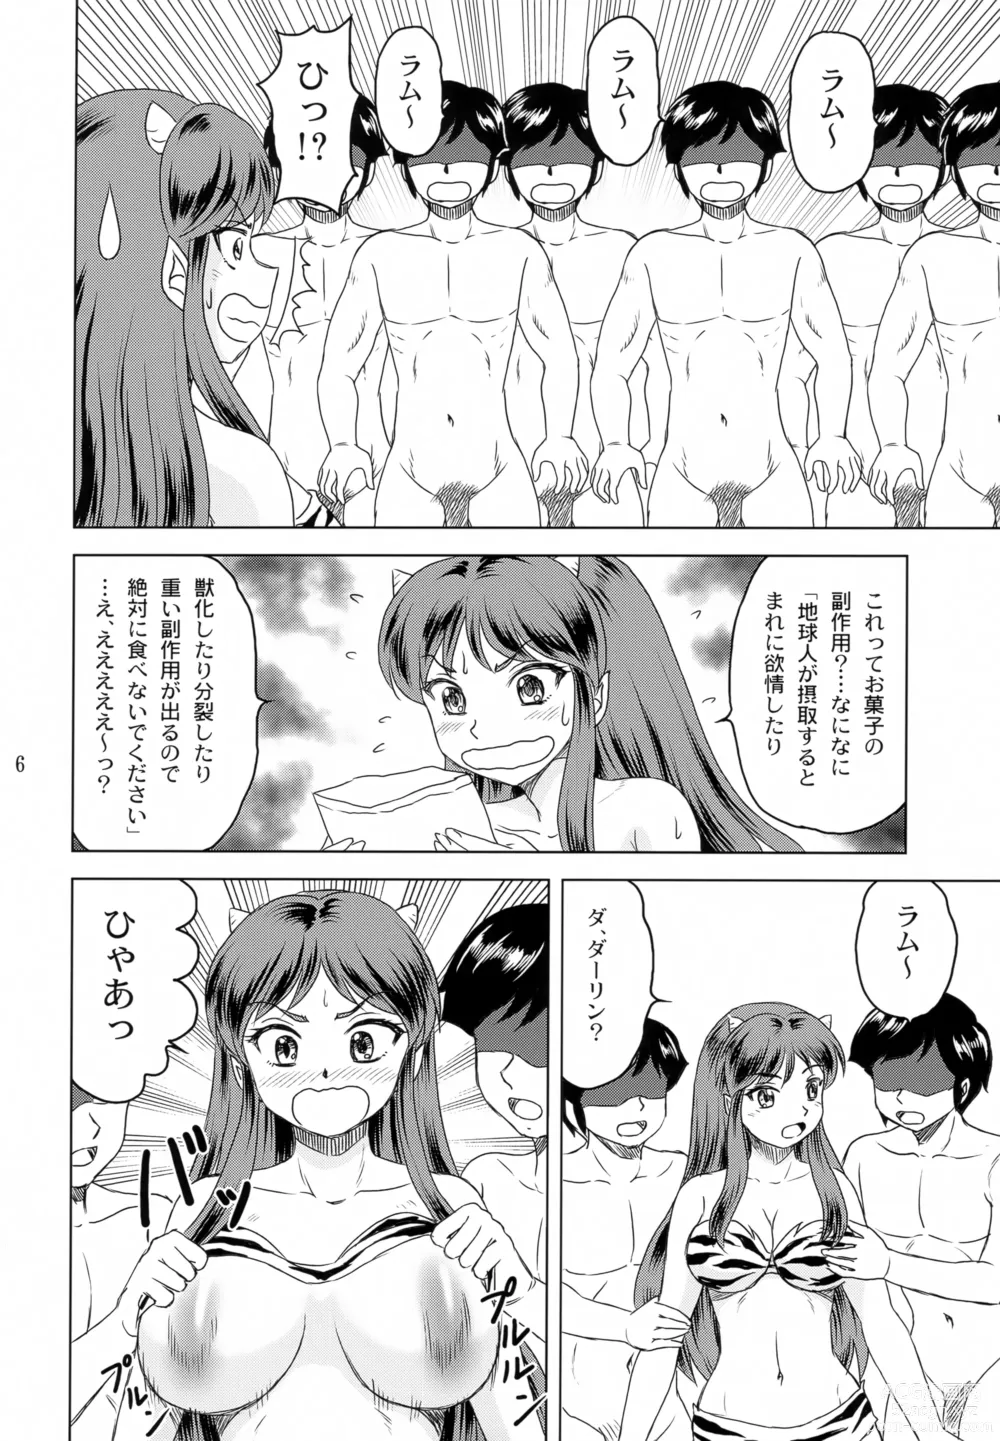 Page 5 of doujinshi Darling ga Ippai